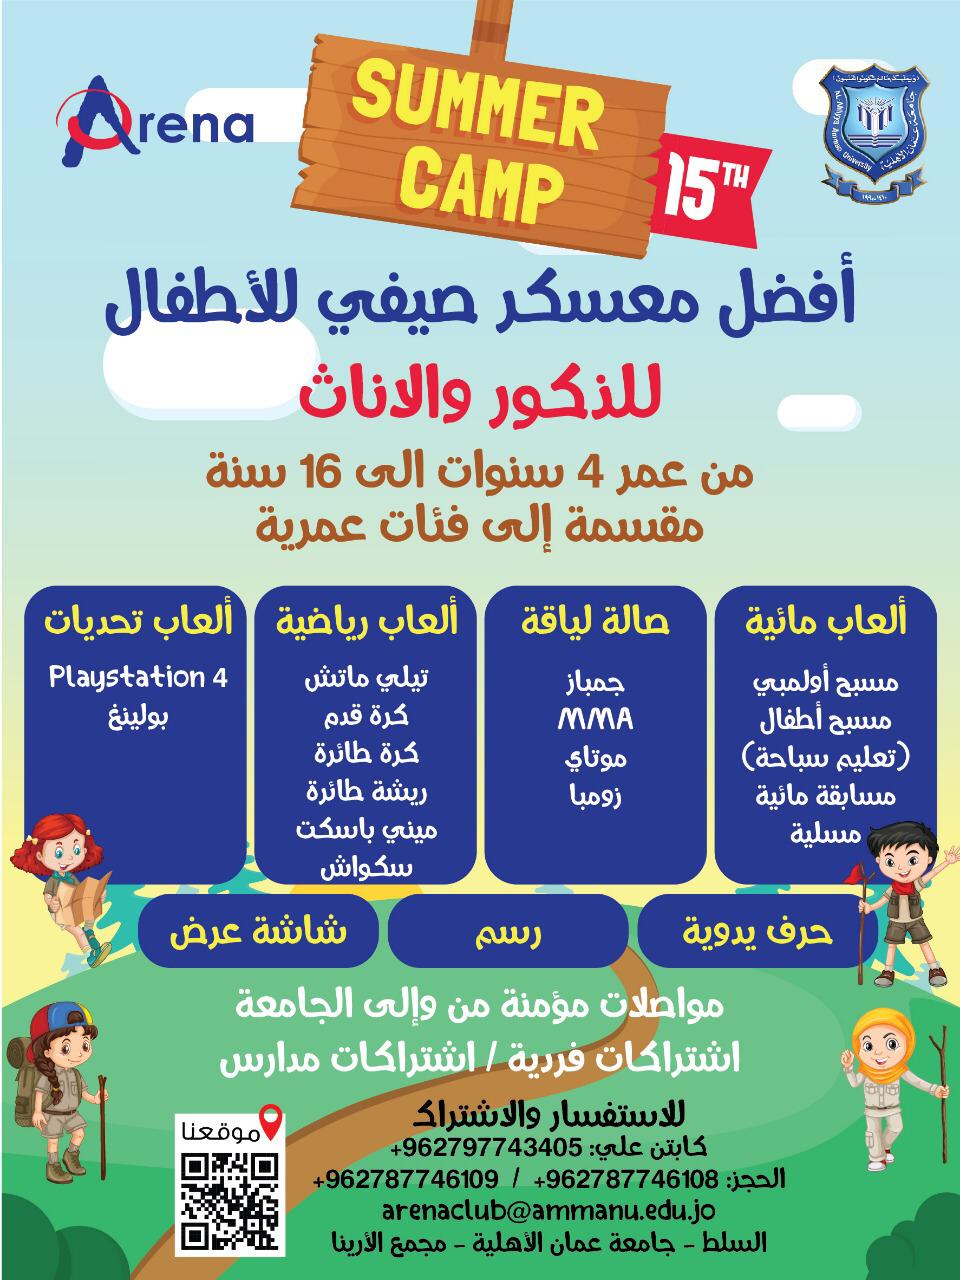 نادي الارينا الصيفي بجامعة عمان الاهلية اعتبارا من 16 حزيران الجاري